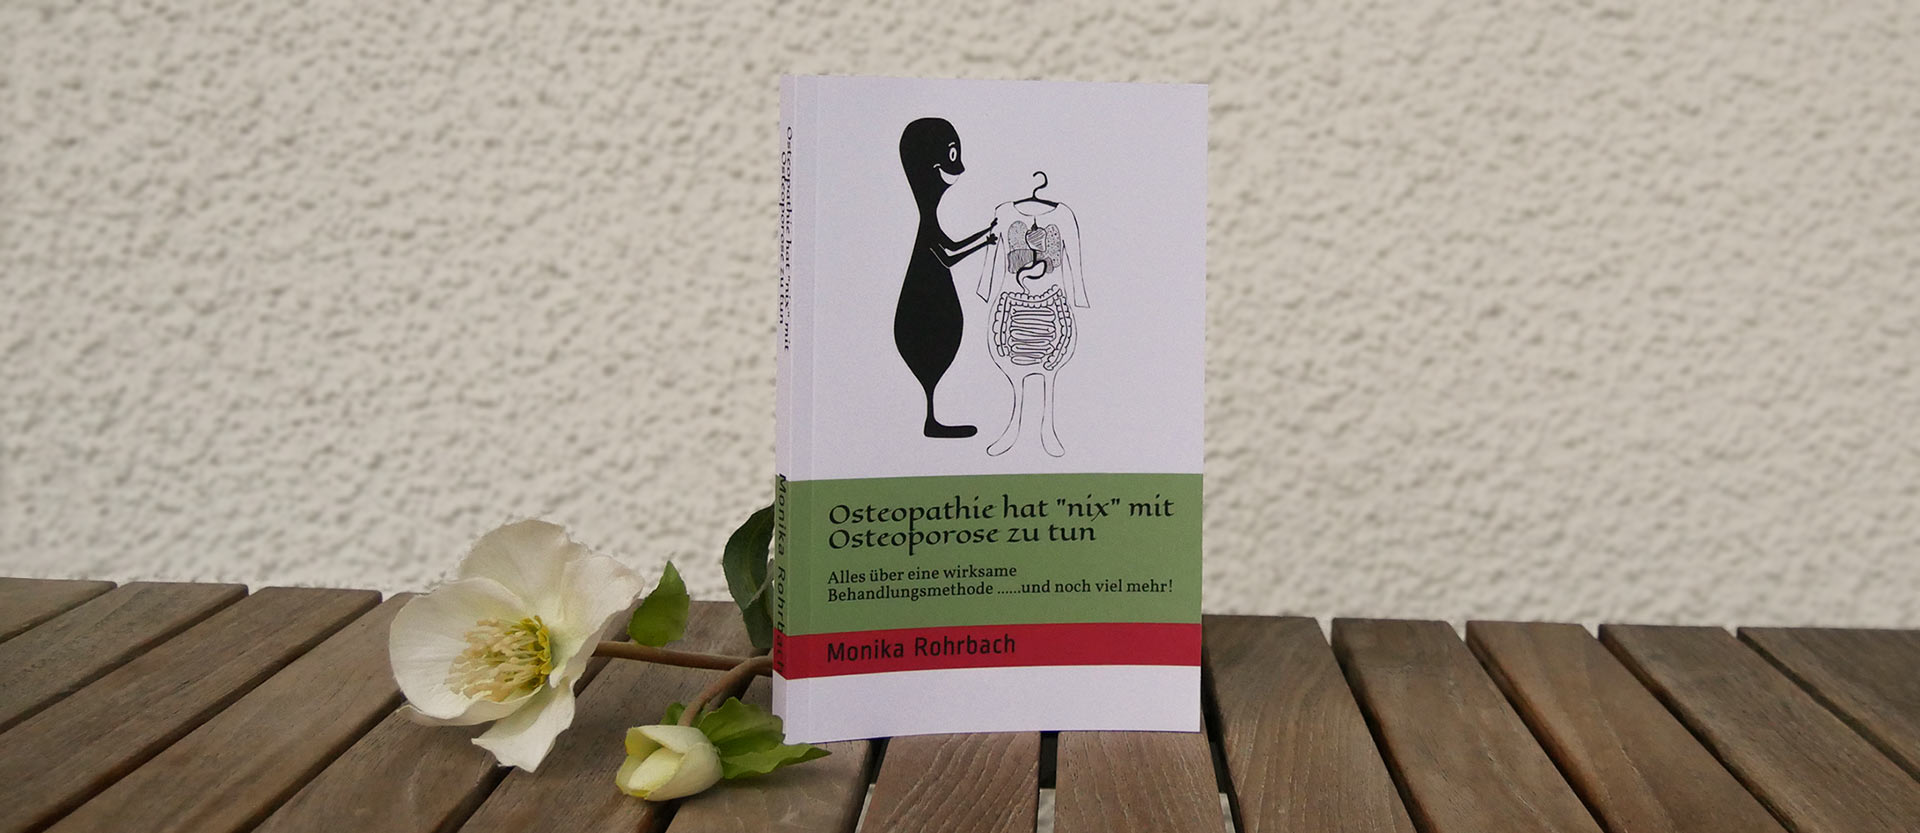 Buch von Monika Rohrbach über Osteopathie